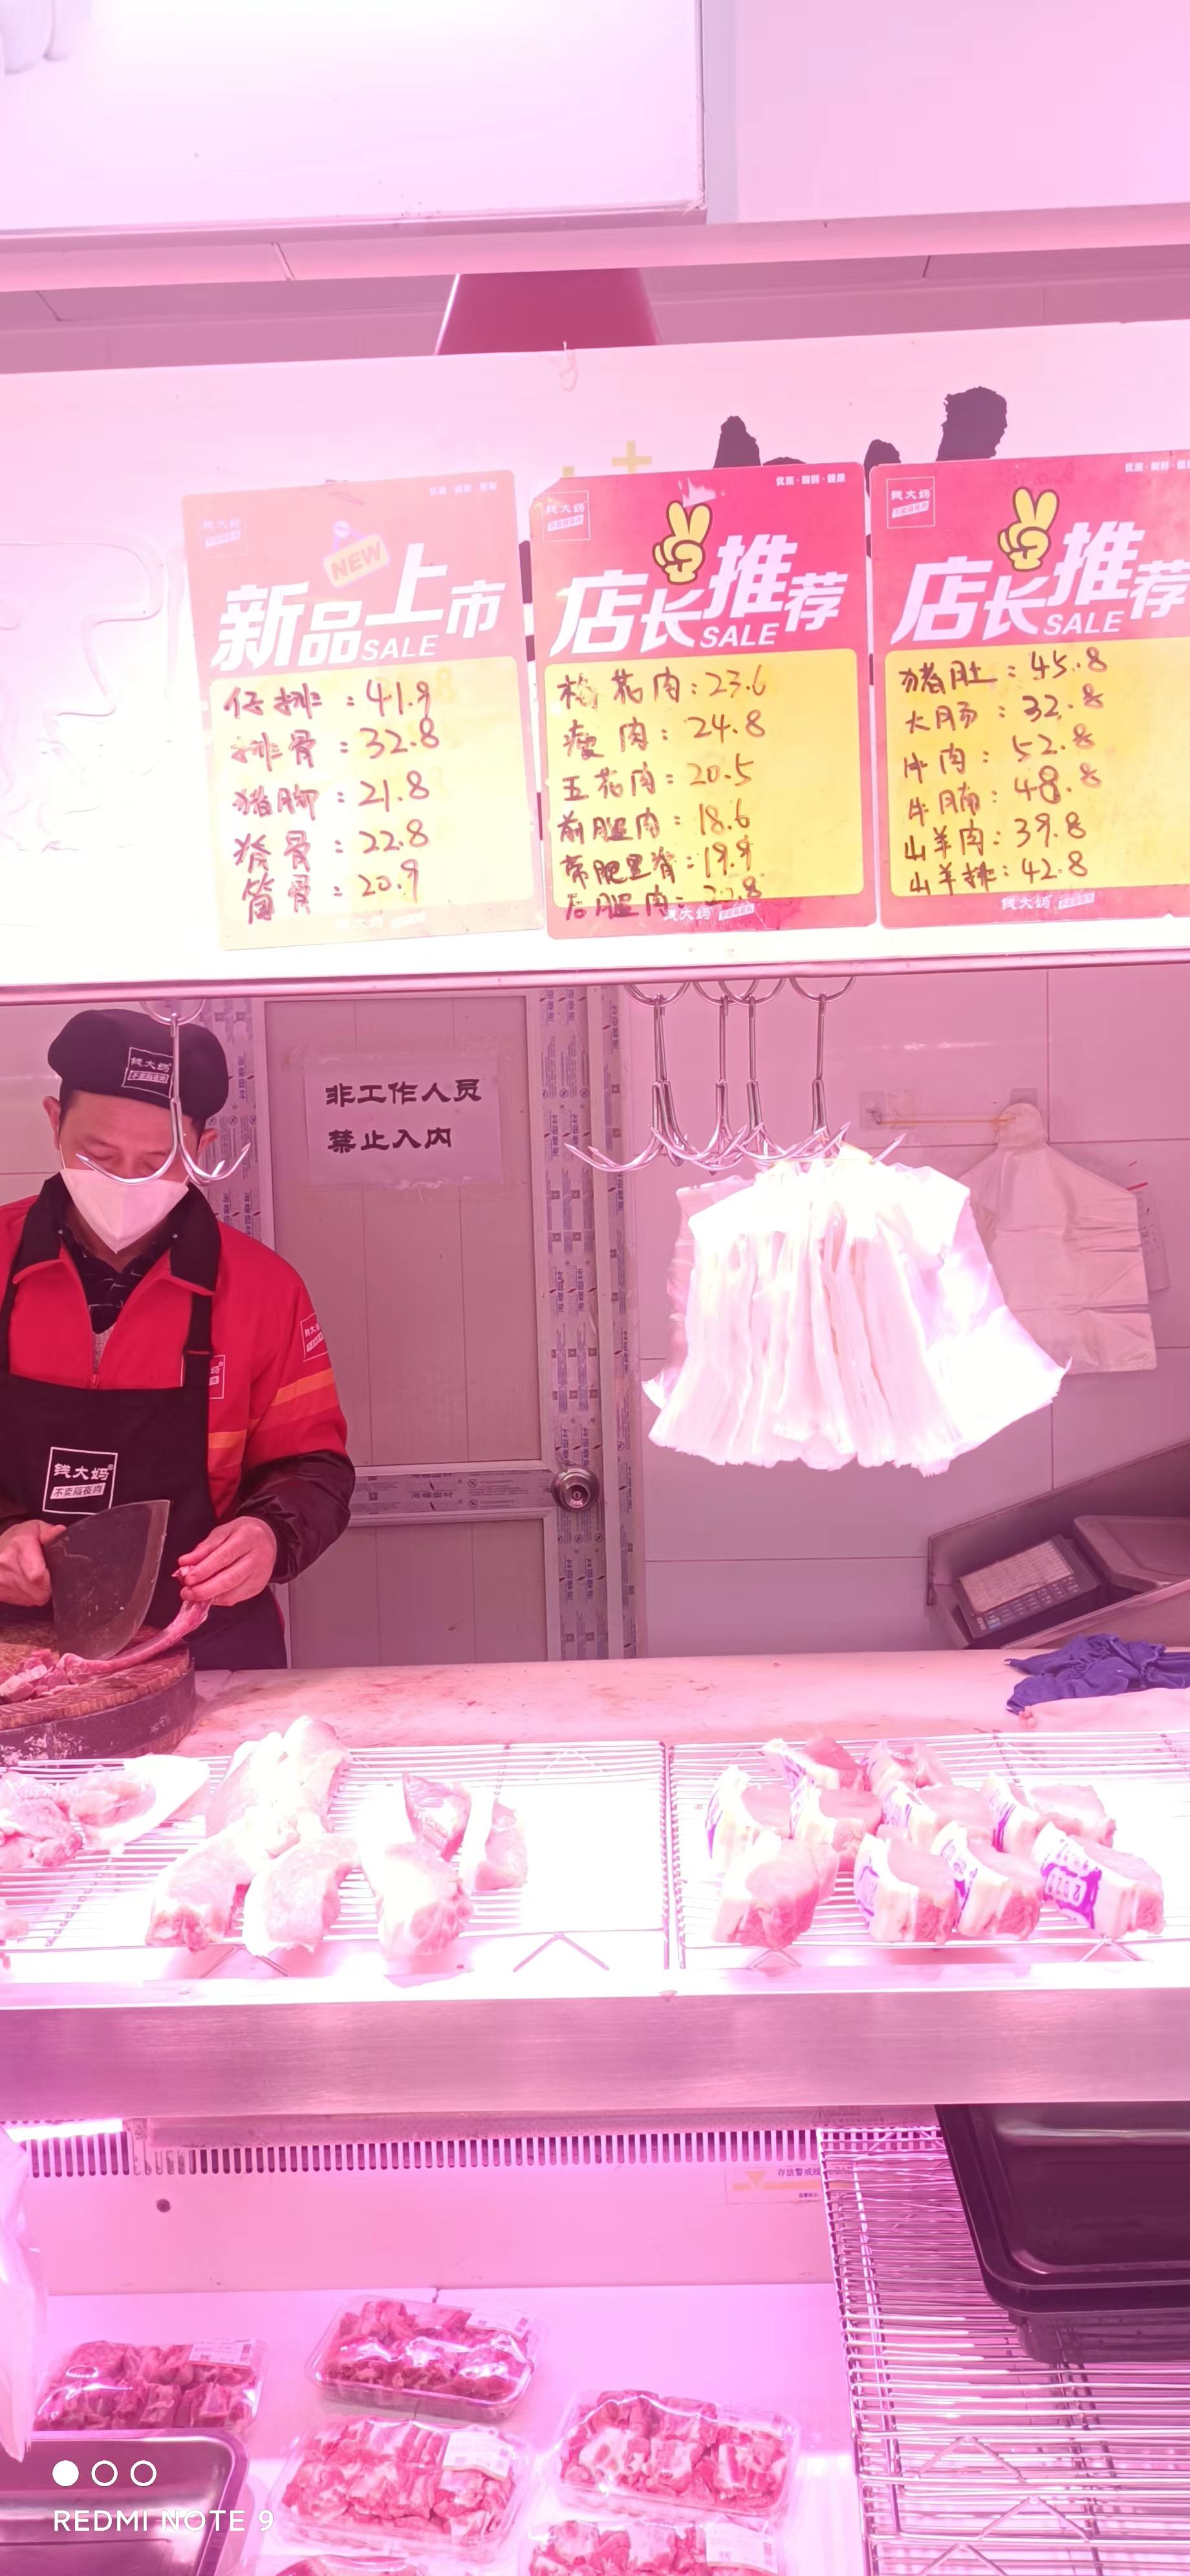 社区生鲜超市里肉品动销迅速（摄影：肖伟）